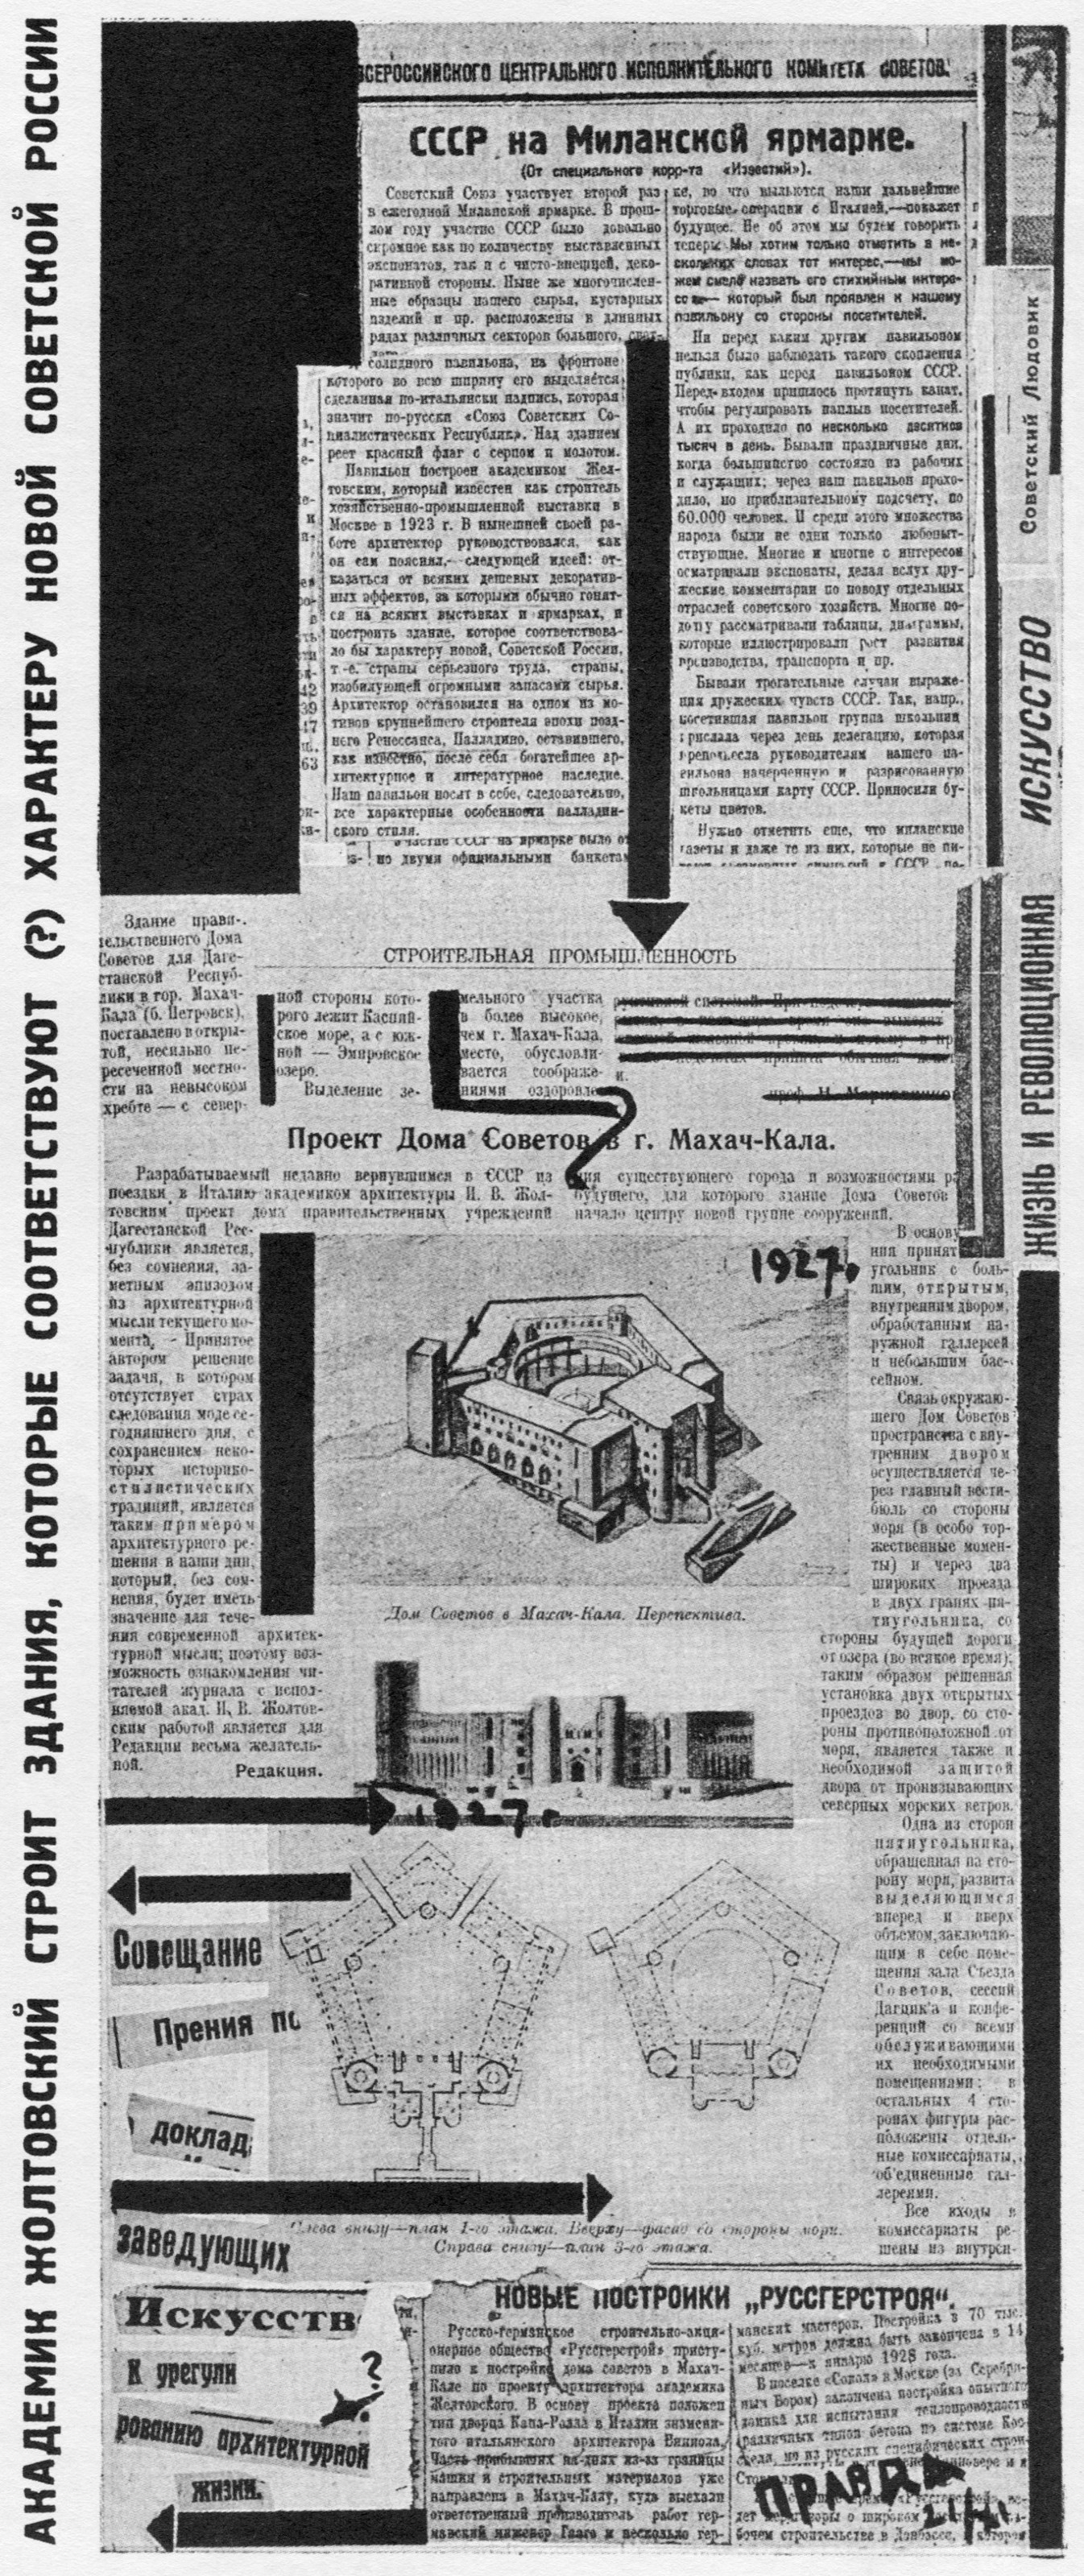 вырезка из журнала „Строительная промышленность“ демонстрирует проект Дома советов в Махач-Кала (Дагестанской ССР)